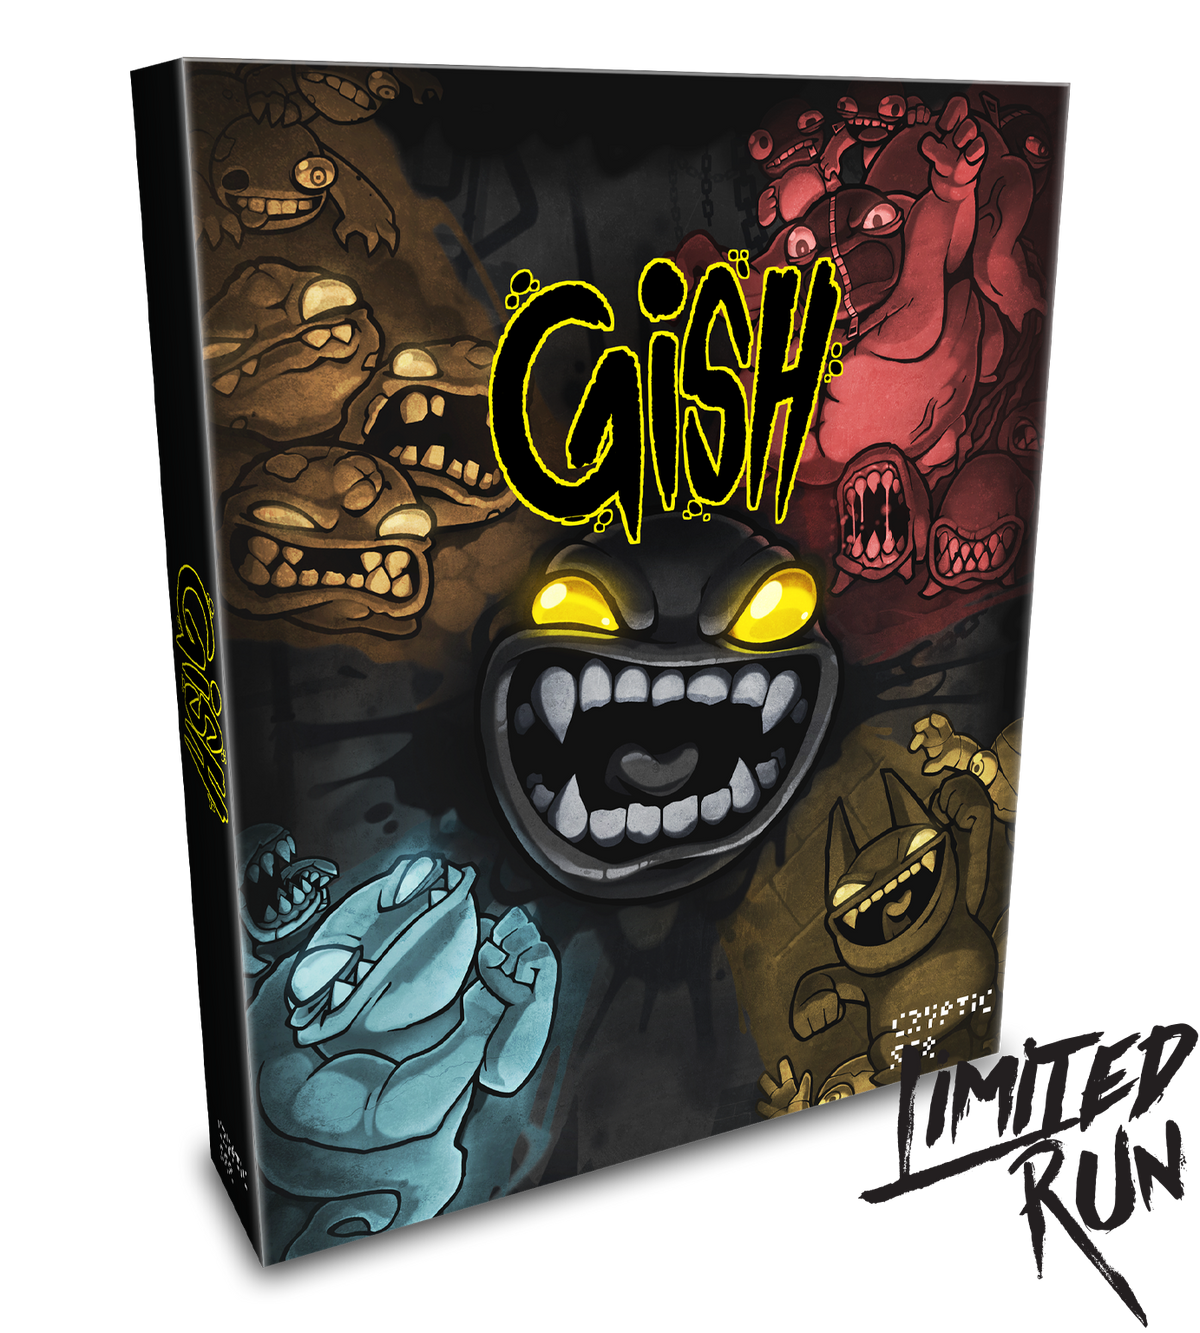 Gish Big Box Edition (PC)